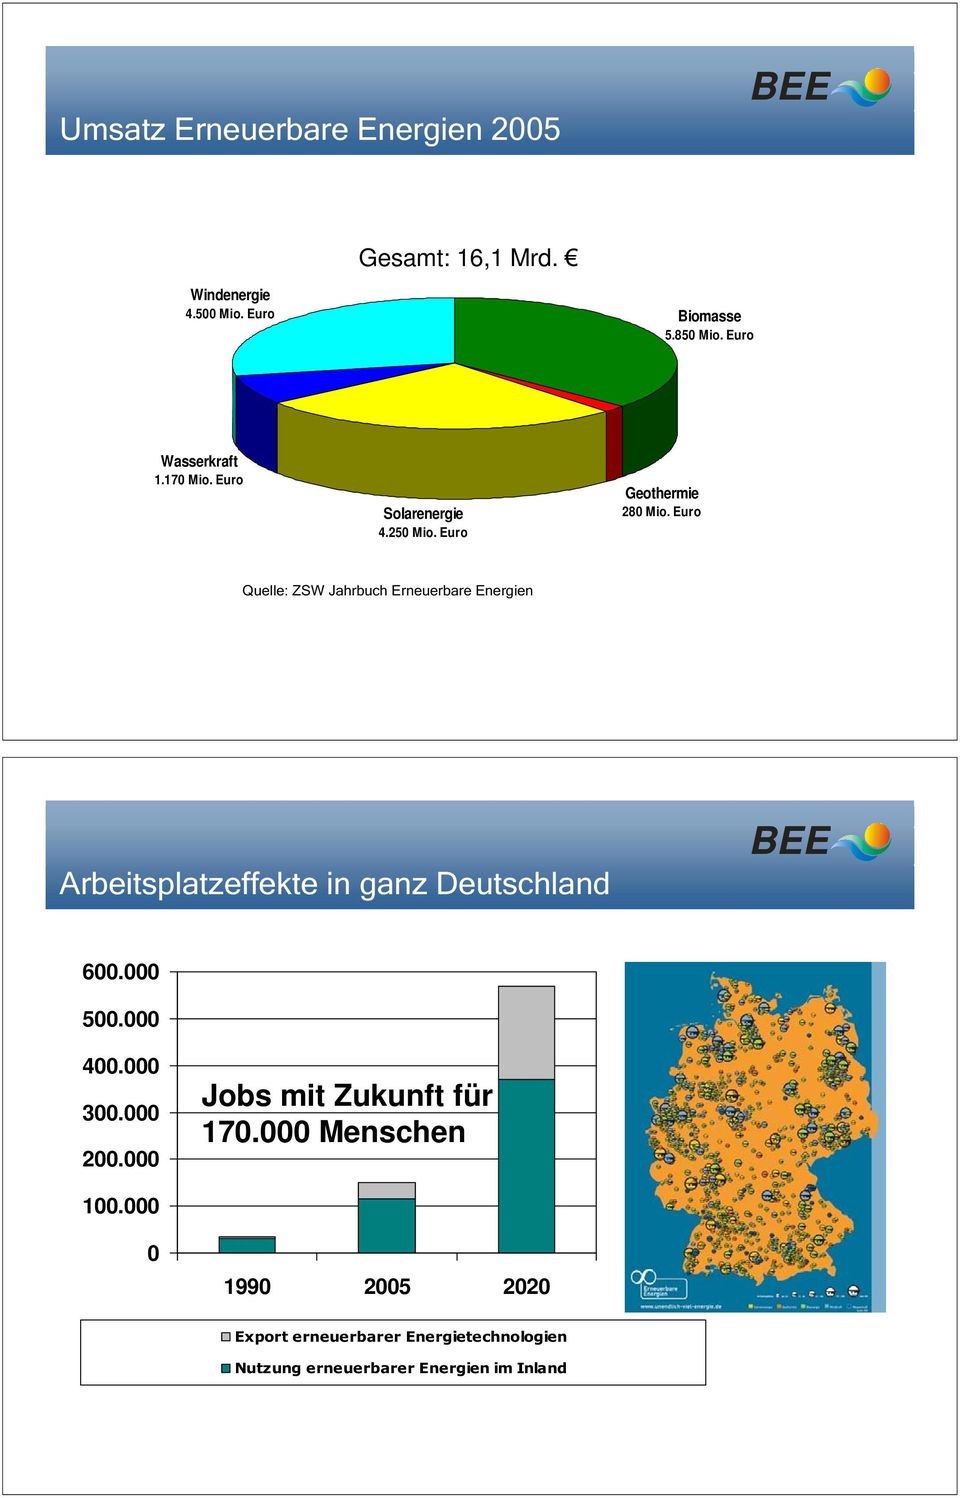 Euro Solarenergie 4.25 Mio. Euro Geothermie 28 Mio.